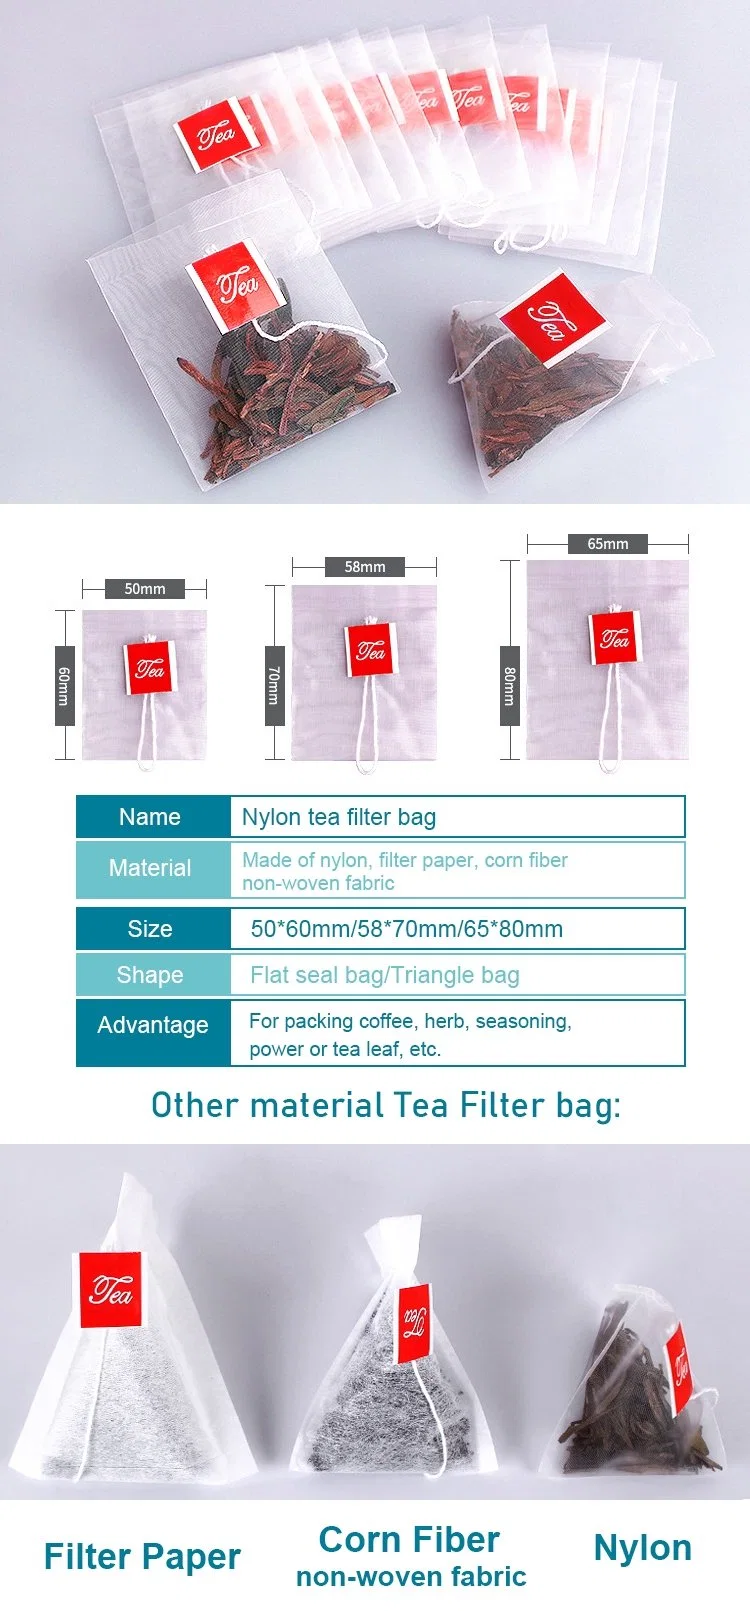 Biodegradeble Corn Fiber Tea Filter Bag with String Tag